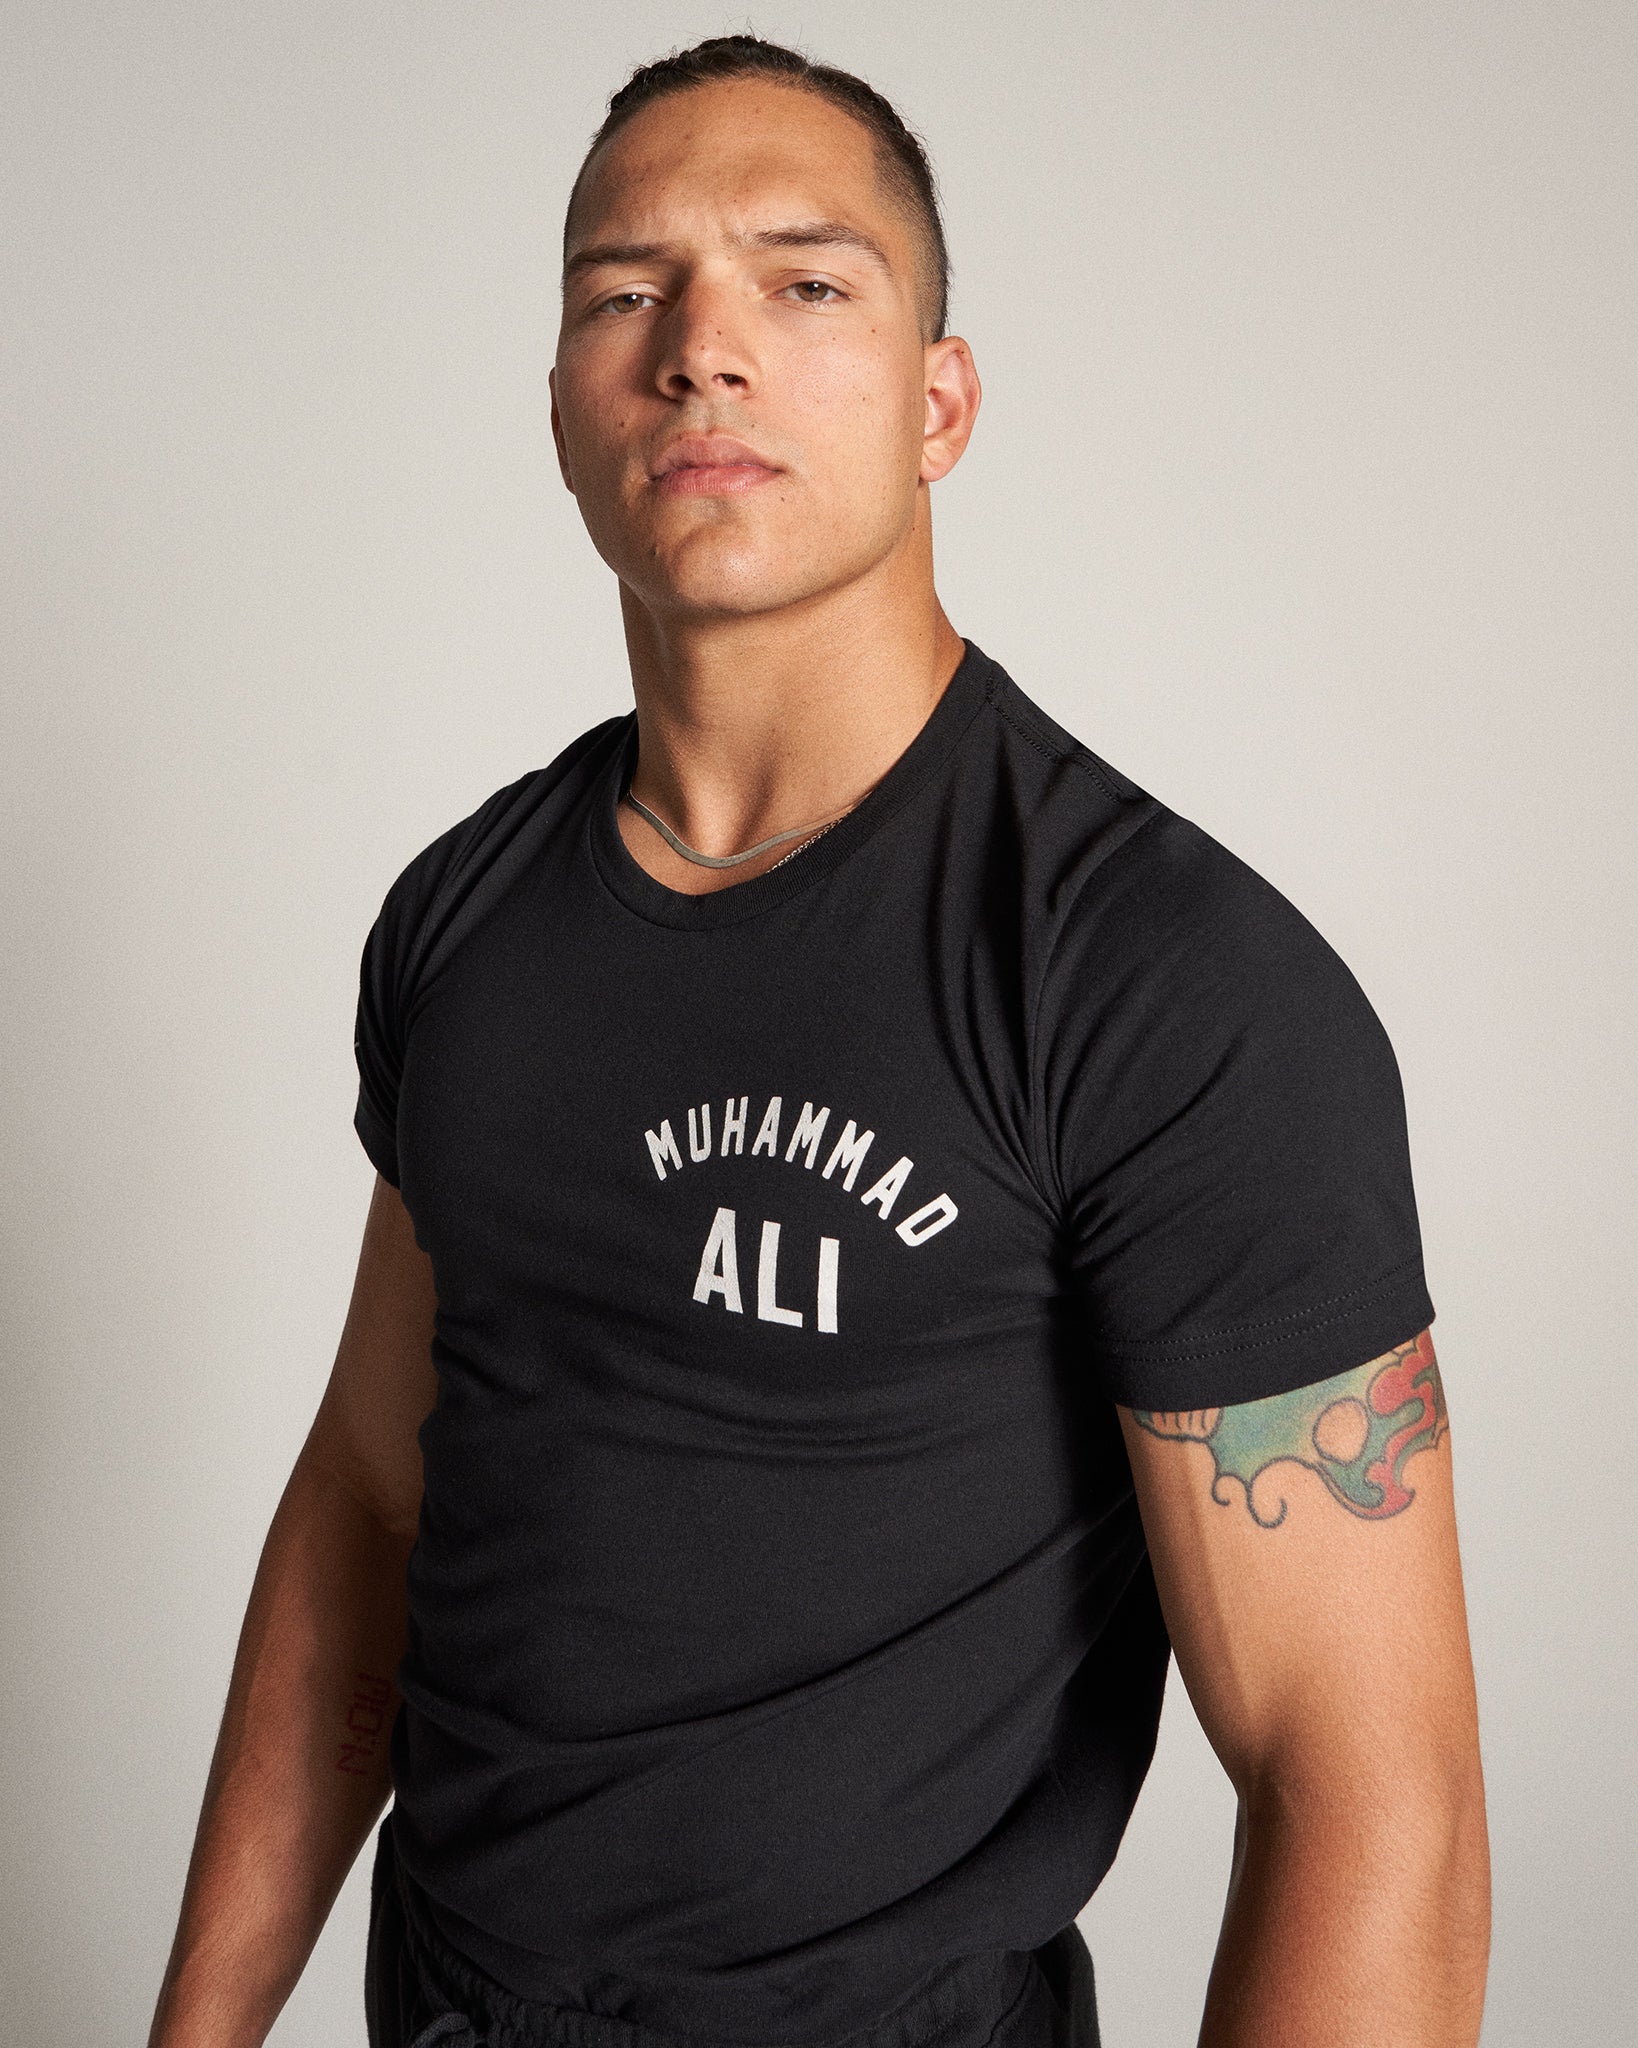 Muhammad Ali King of Ring T-Shirt the | RUDIS